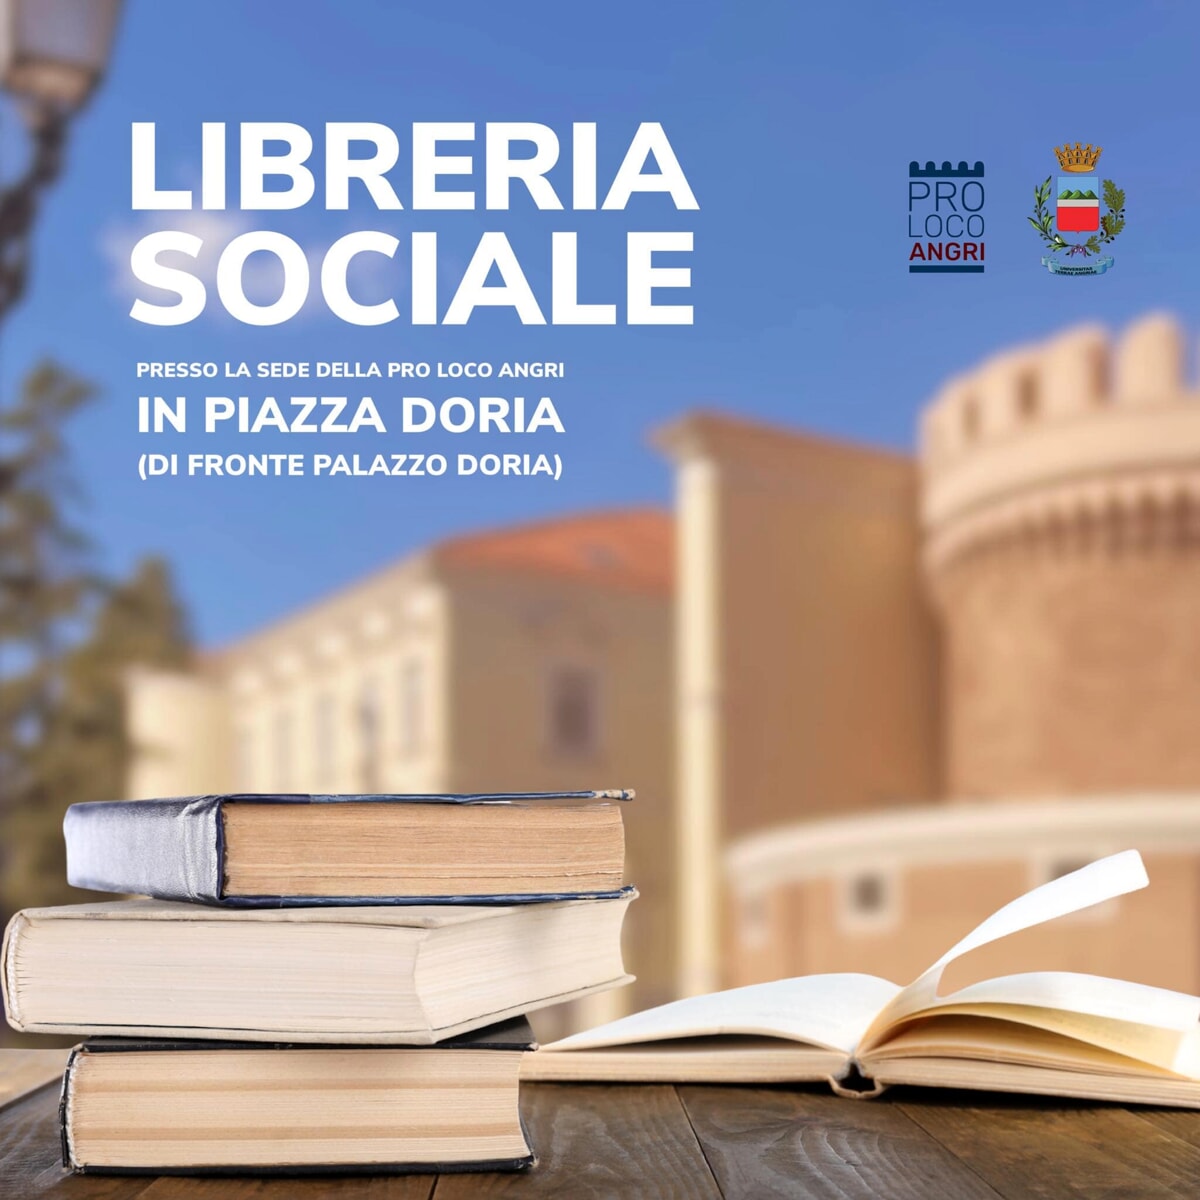 Libreria sociale ad Angri, l’iniziativa per gli amanti della lettura